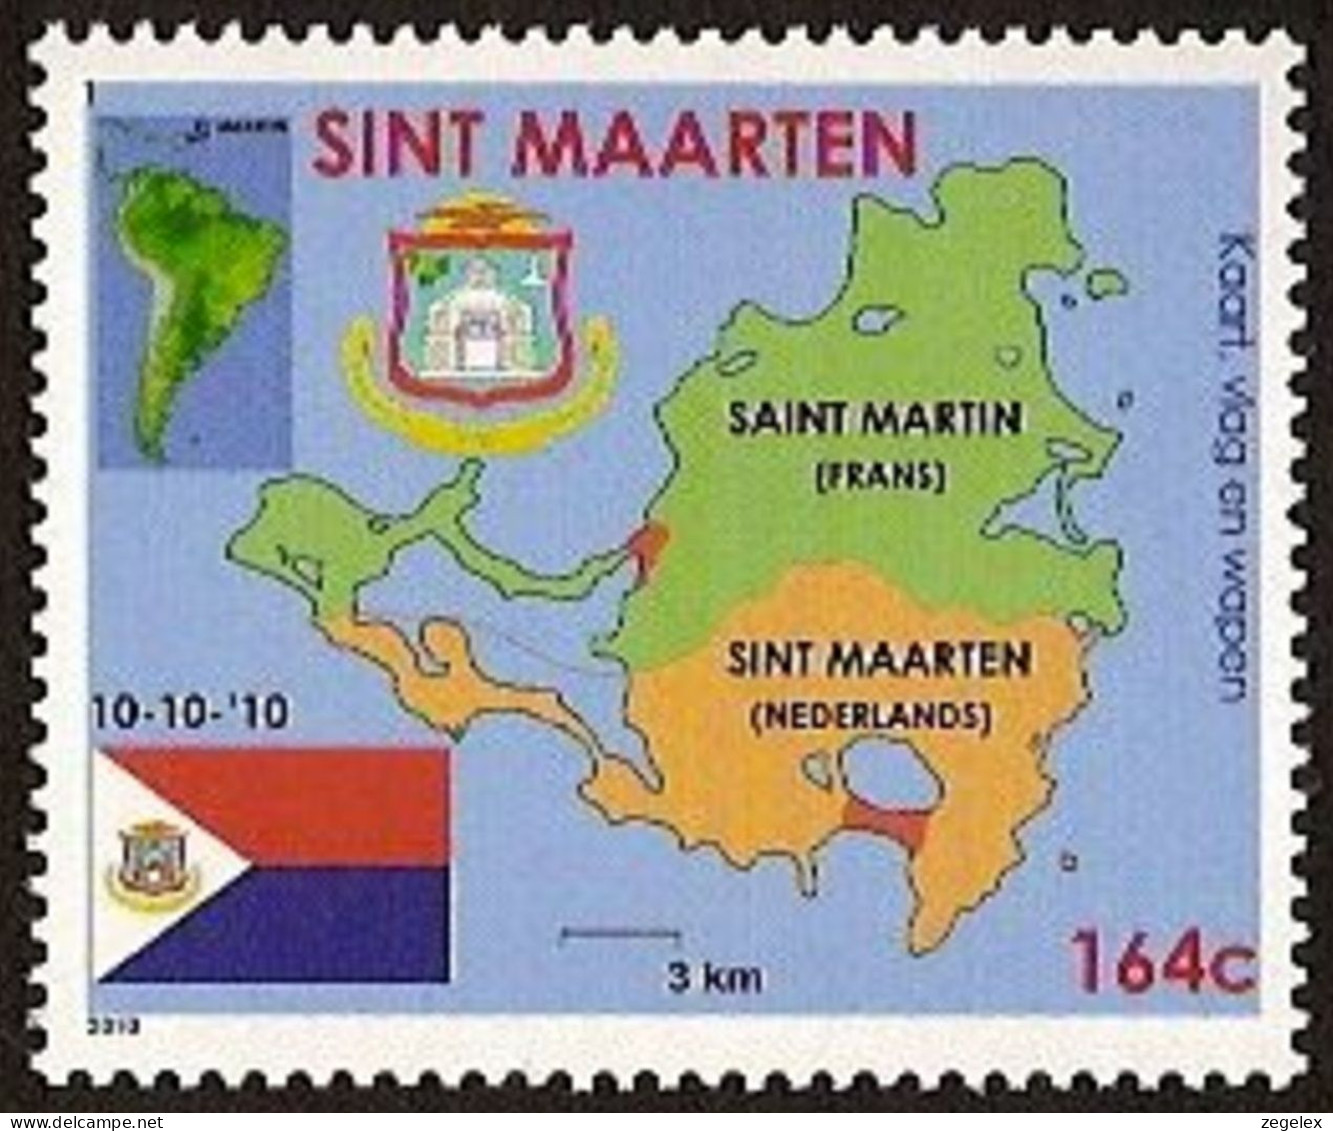 Sint Maarten 2010 Wapen, Vlag, Landkaart NVPH SM-001 MNH ** Postfrisch - Curaçao, Antilles Neérlandaises, Aruba